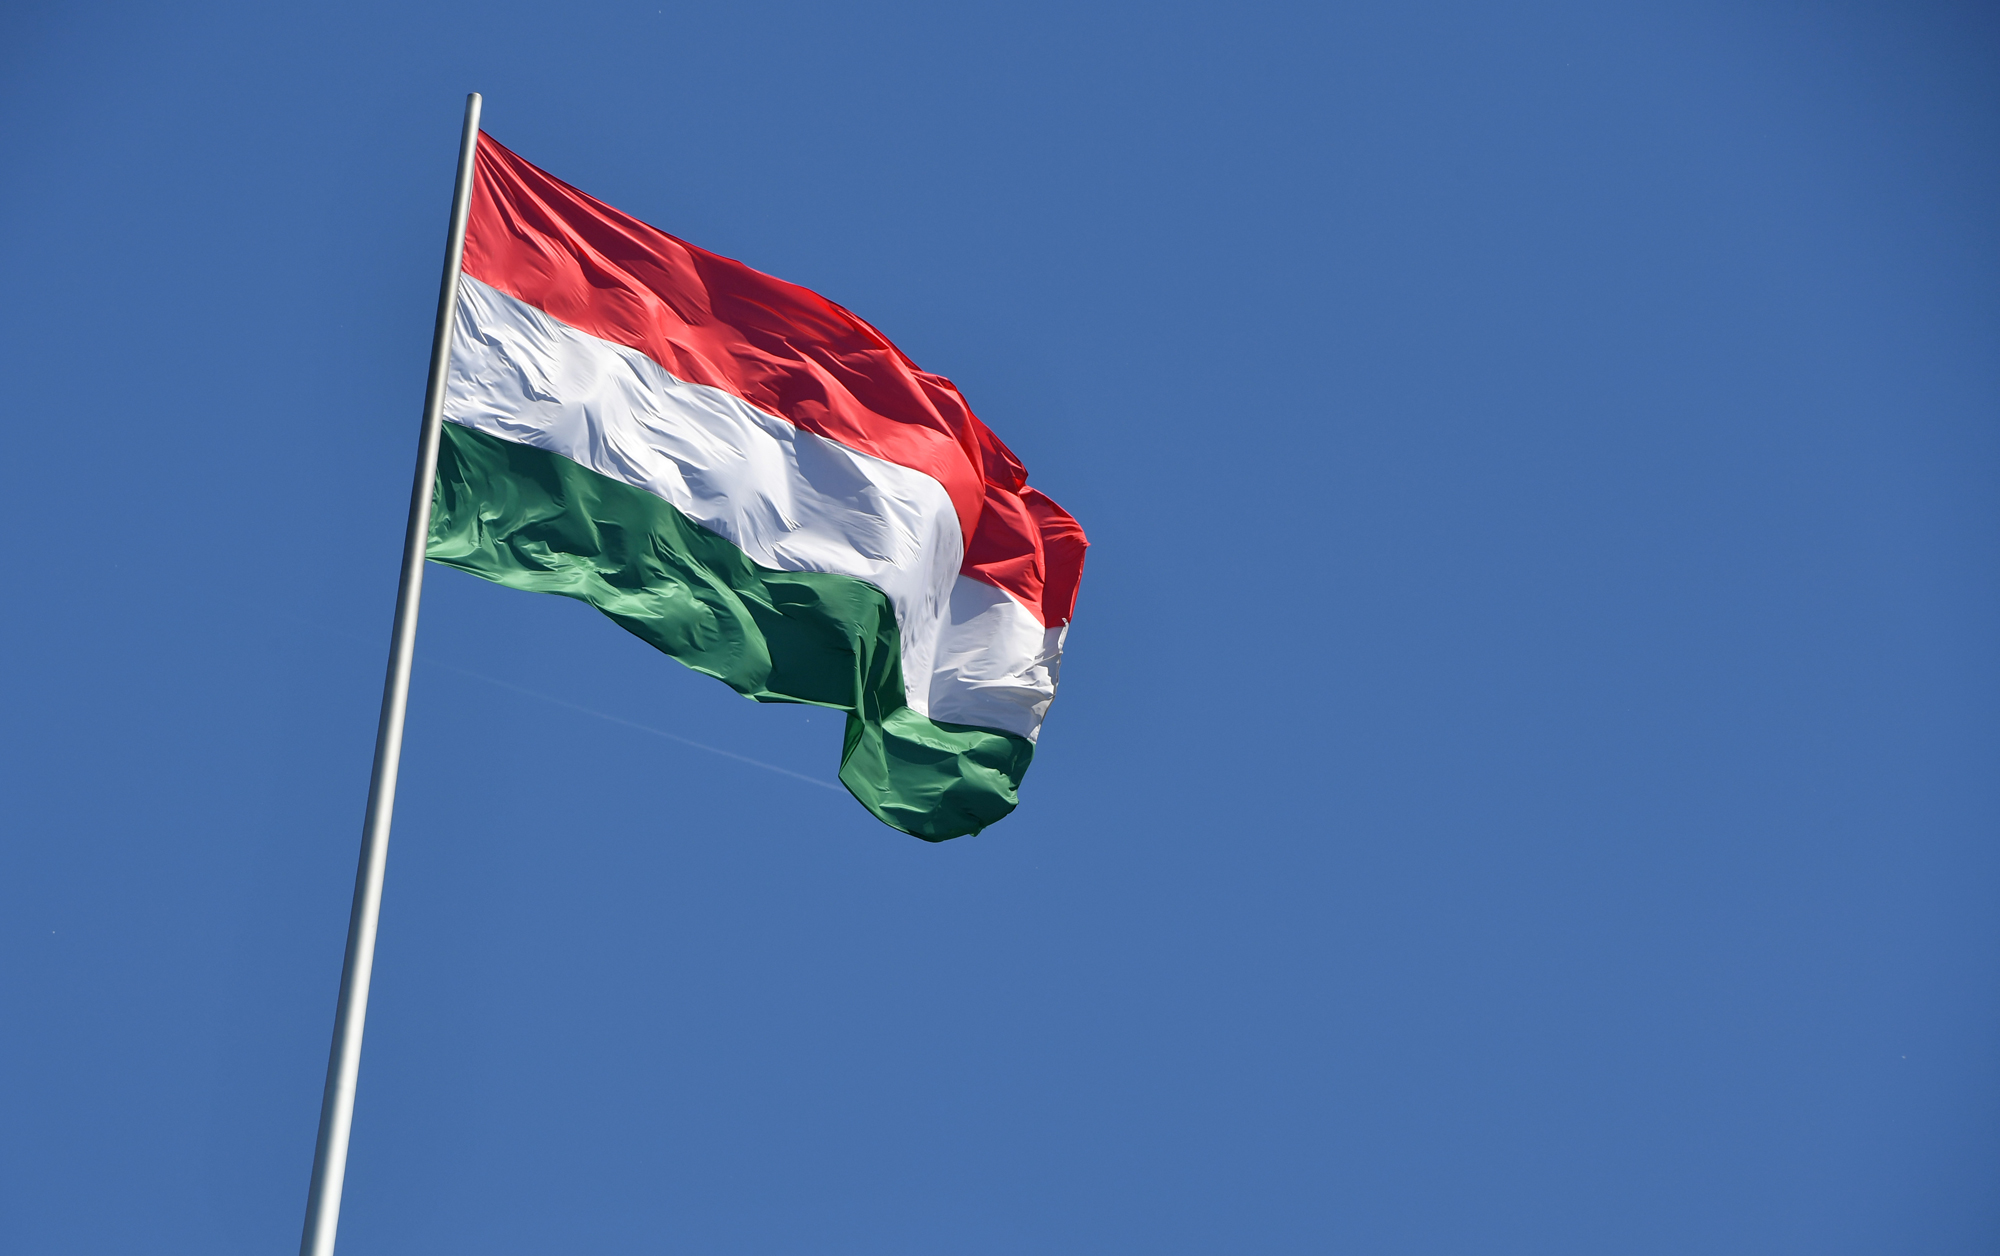 Kitűzetnék a magyar zászlót a társasházakra a foci Eb alatt - Blikk